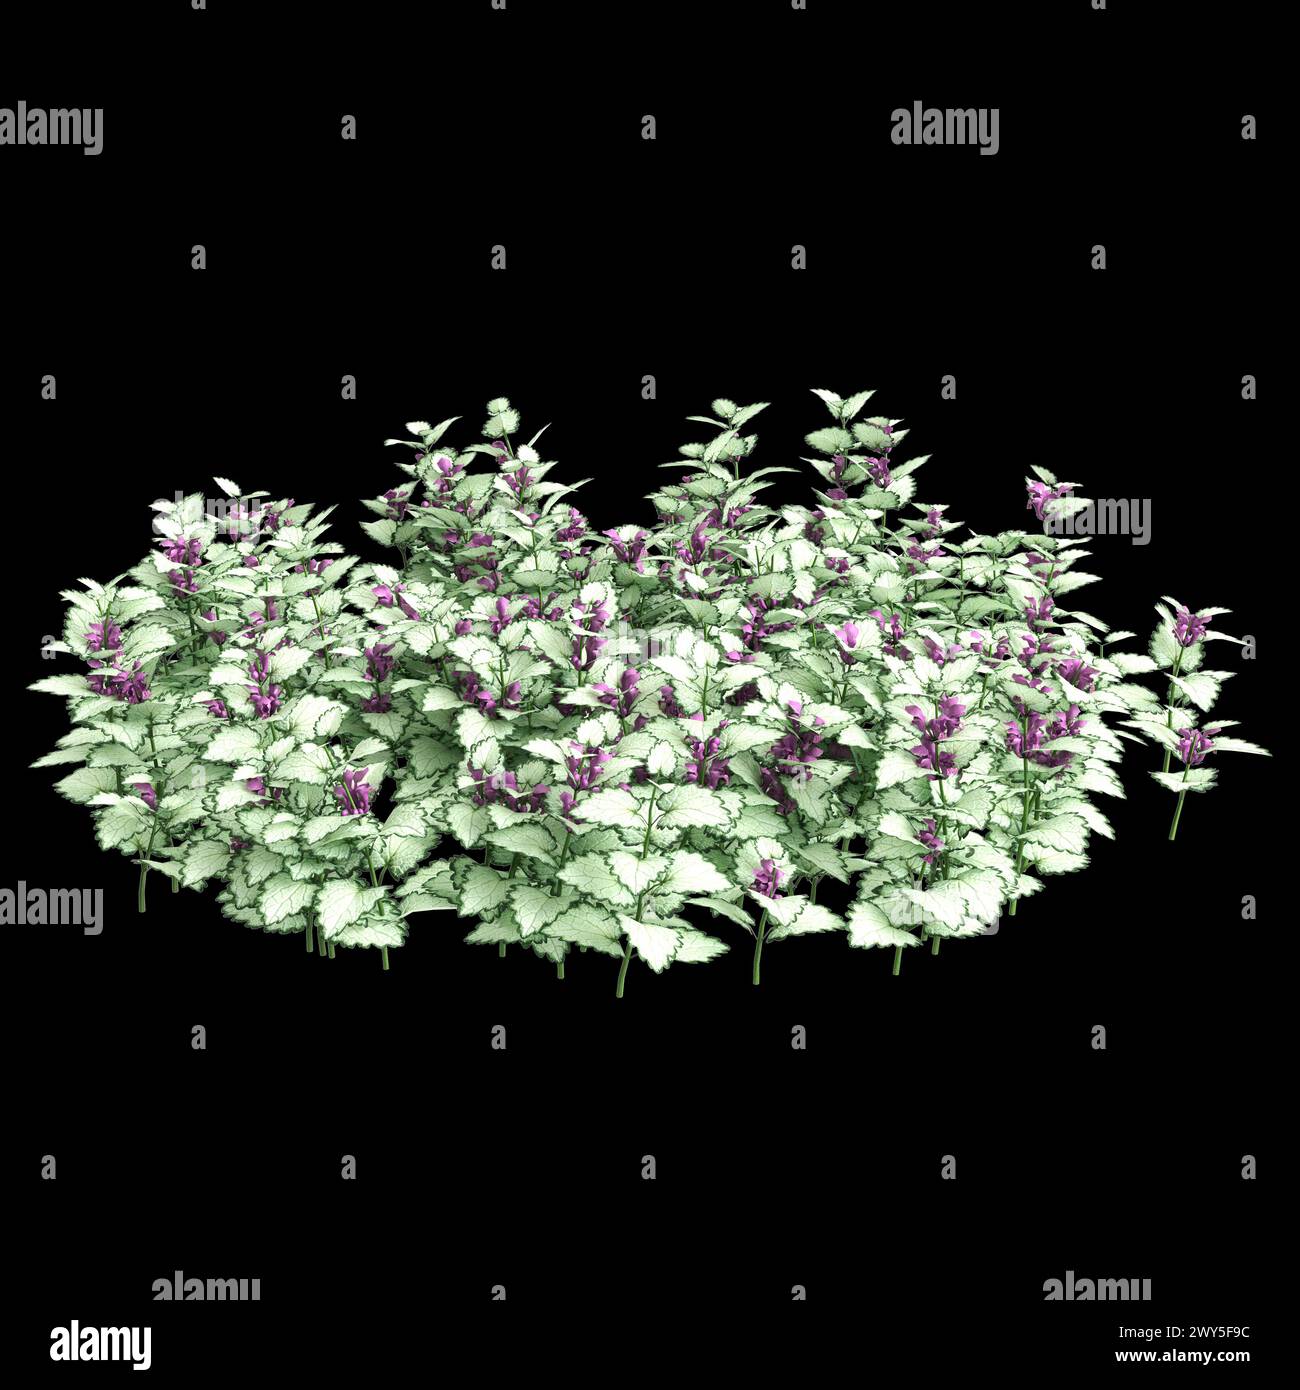 3d illustration of Lamium maculatum bush isolated on black background Stock Photo